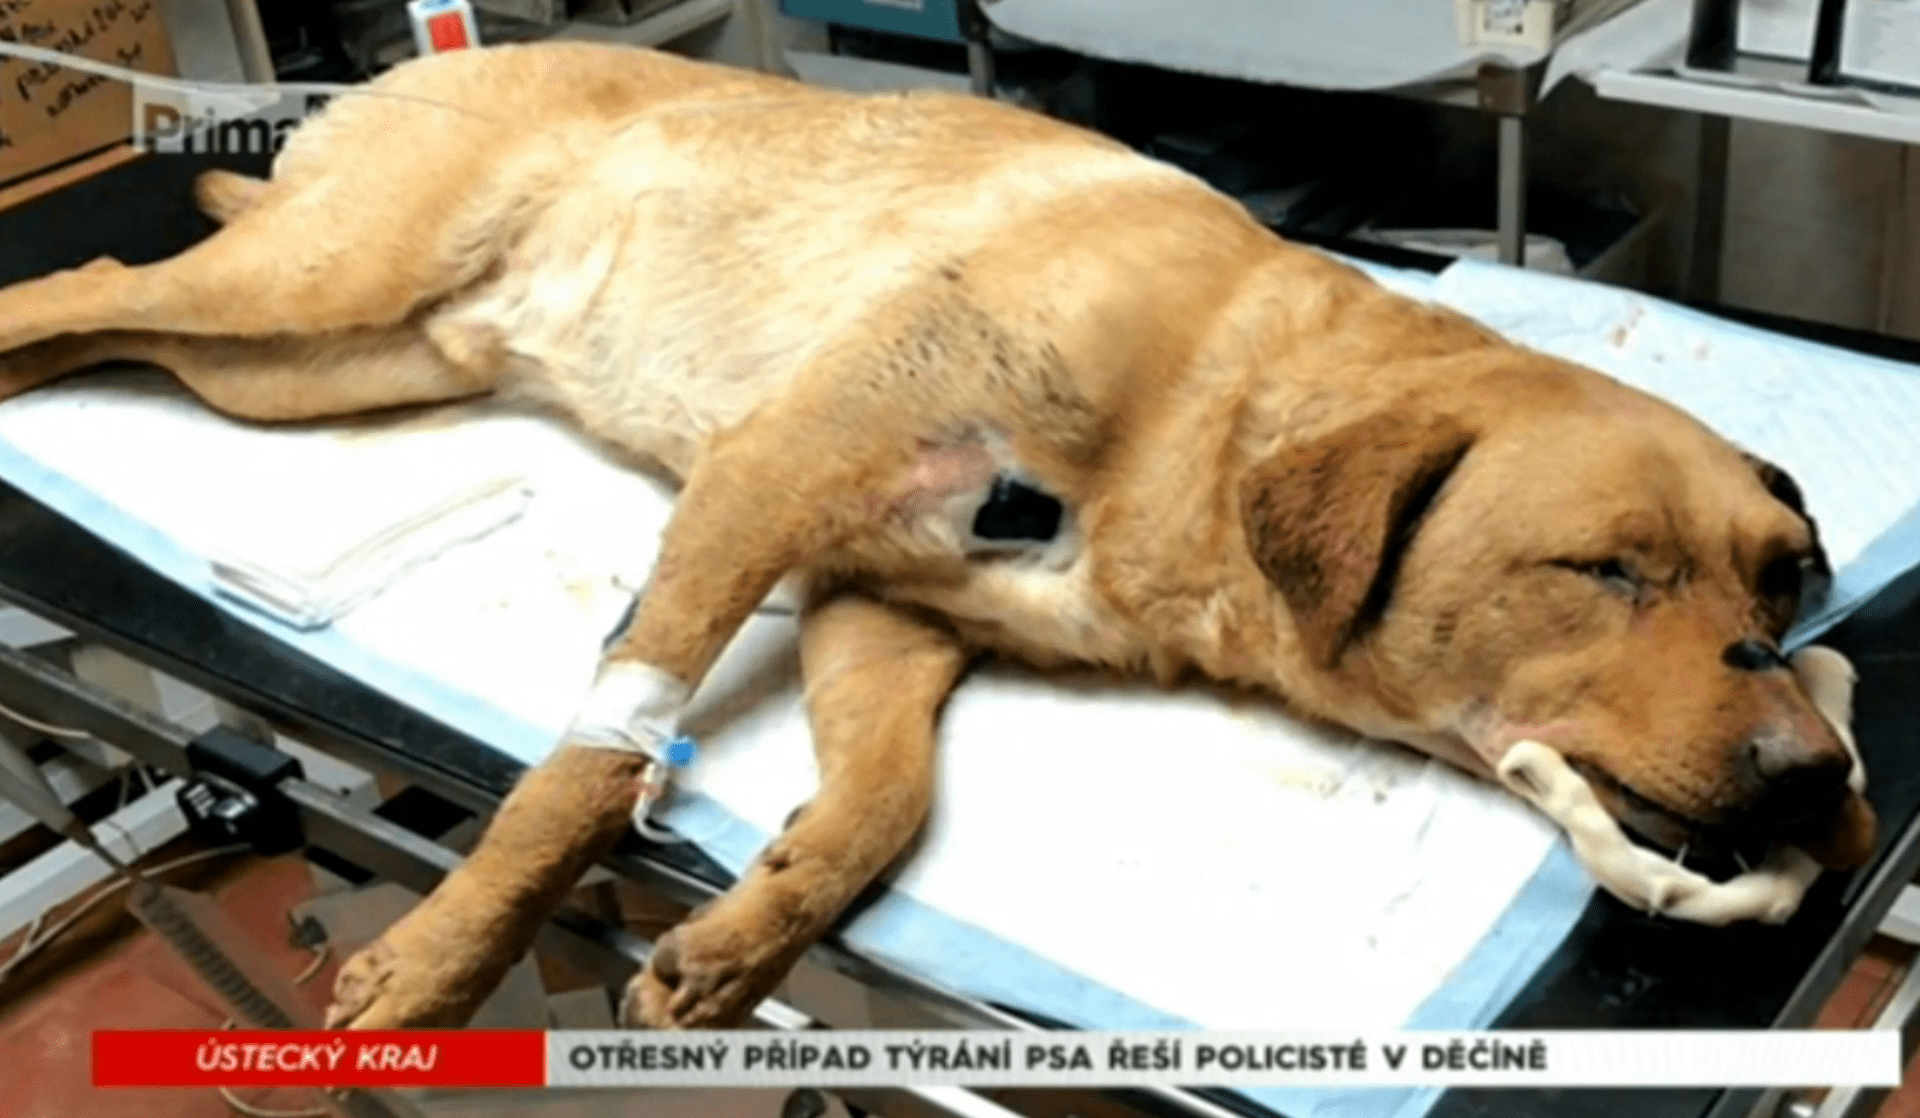 Otřesný případ týraní psa řeší policisté v Děčíně